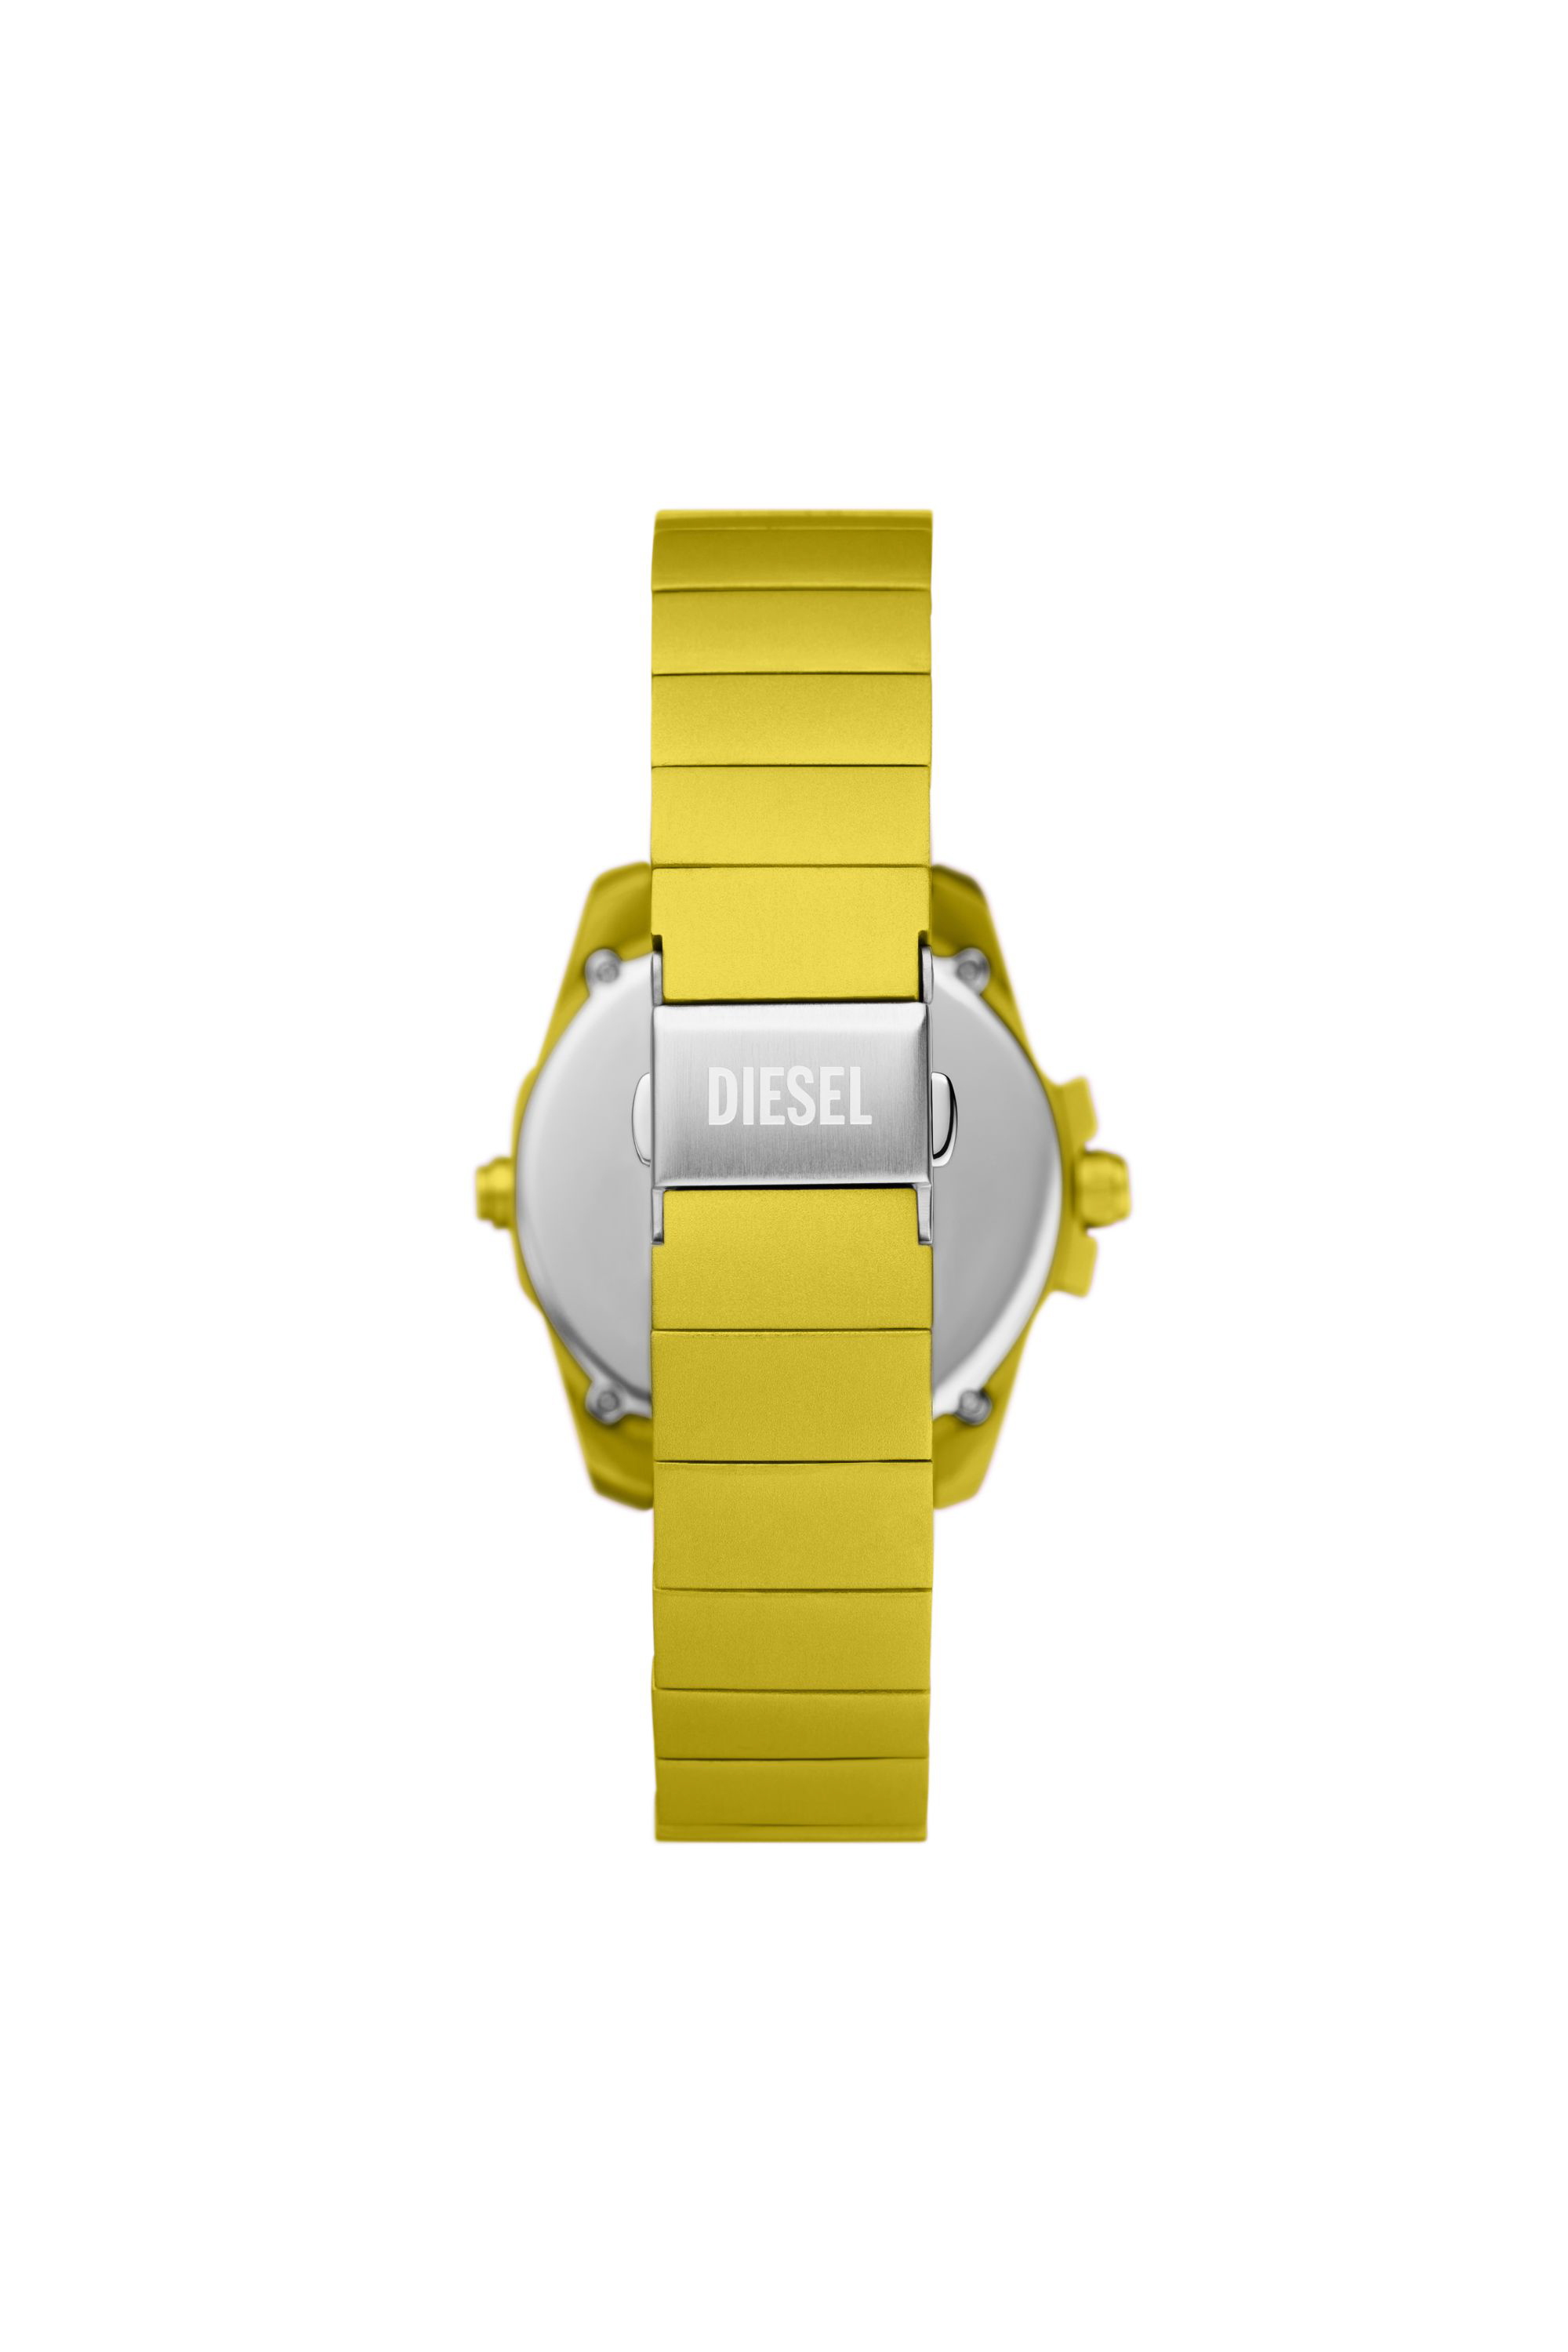 Diesel - DZ2207 WATCH, Hombre Reloj Baby Chief digital de aluminio amarillo in Amarillo - Image 2